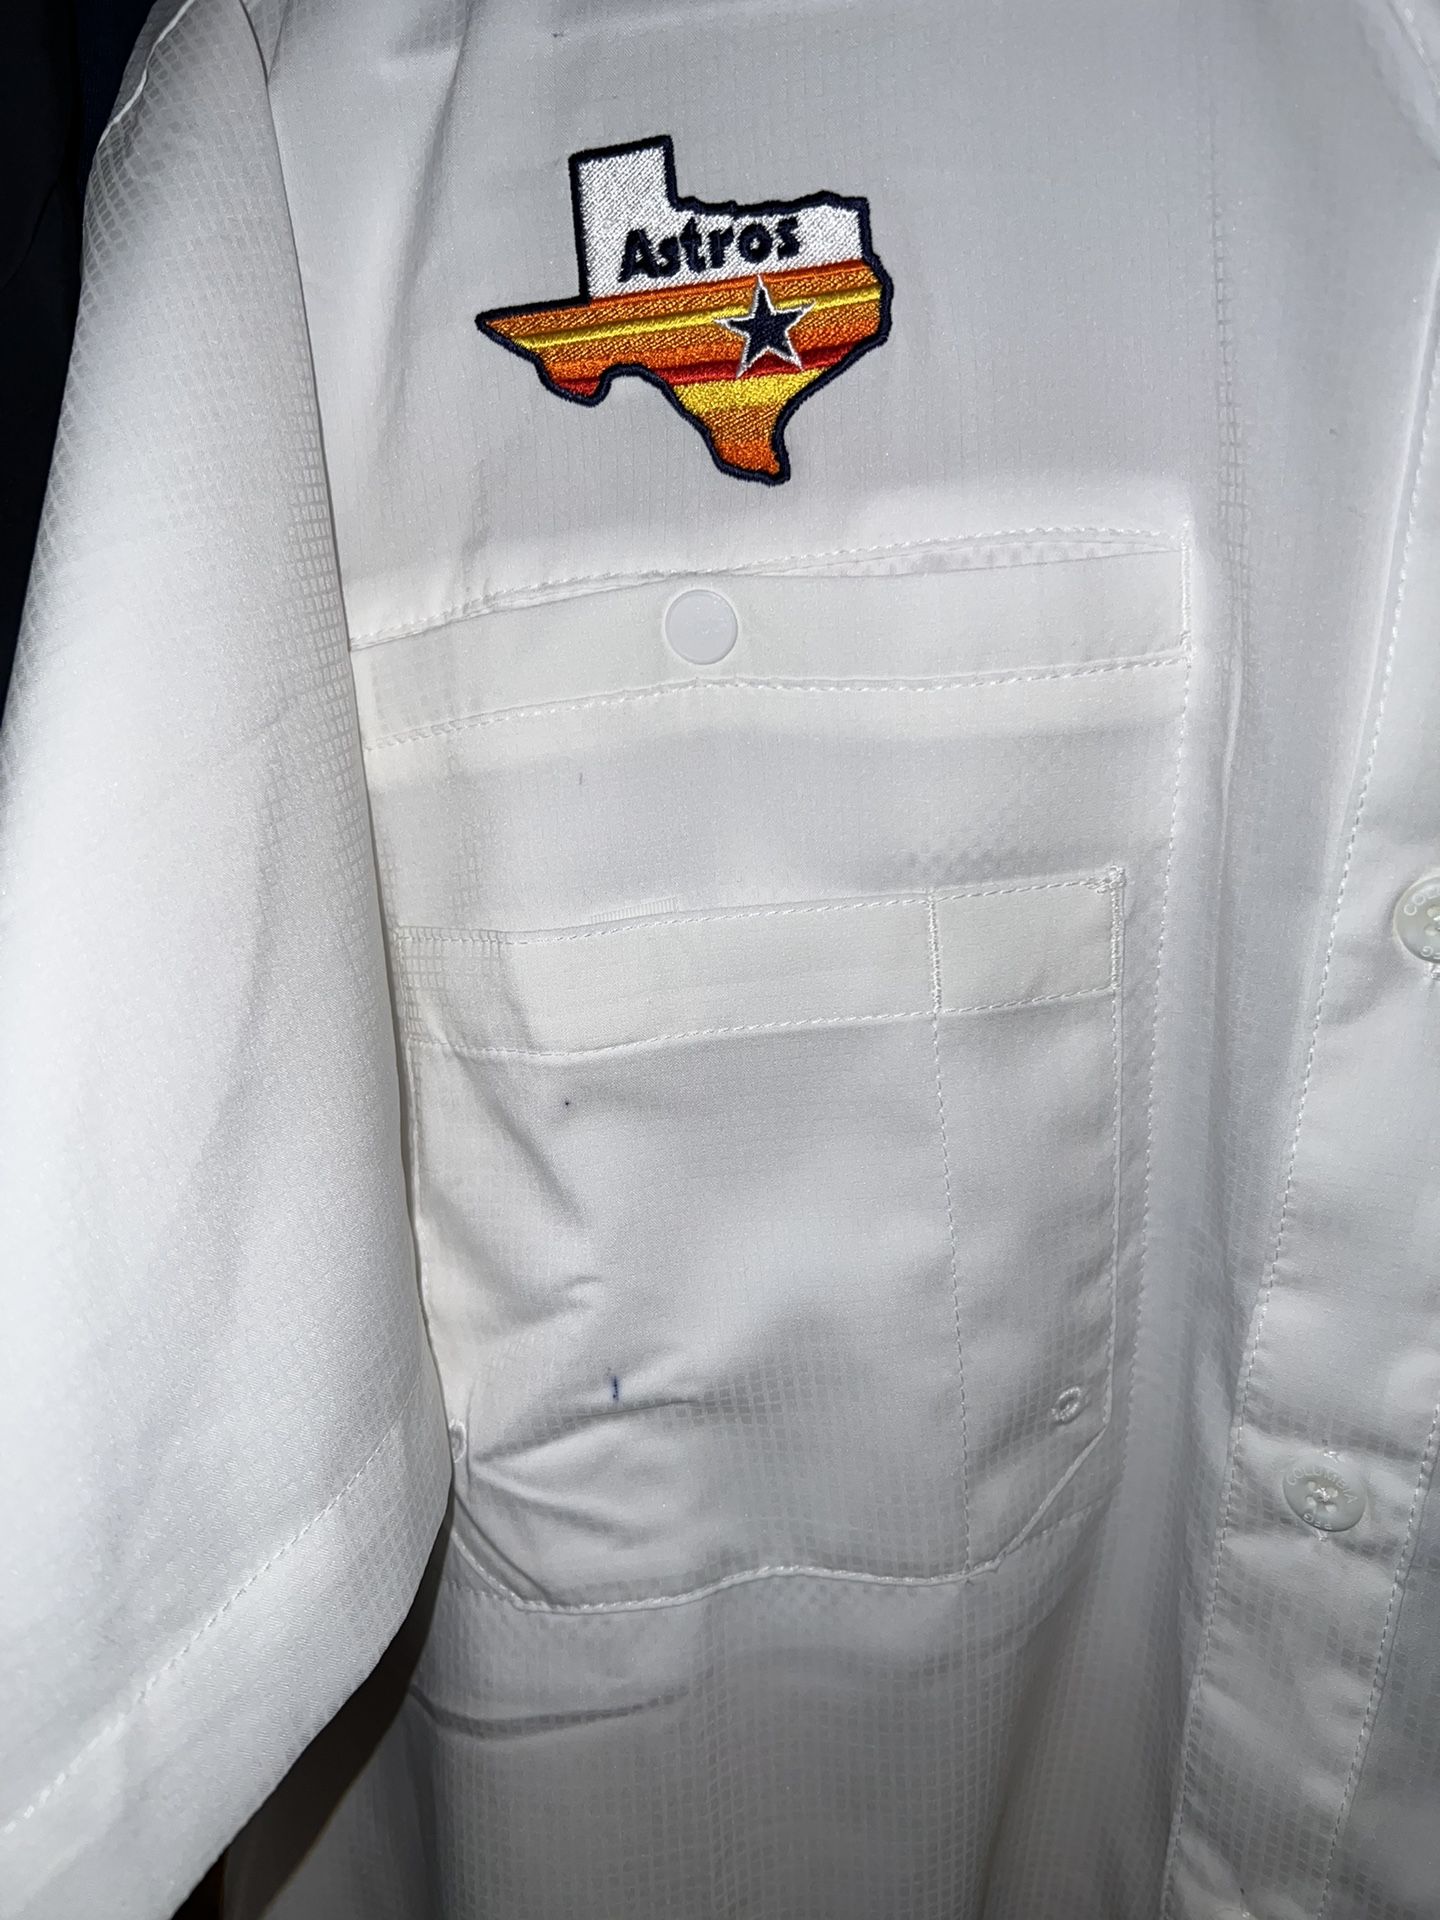 astros columbia shirt white